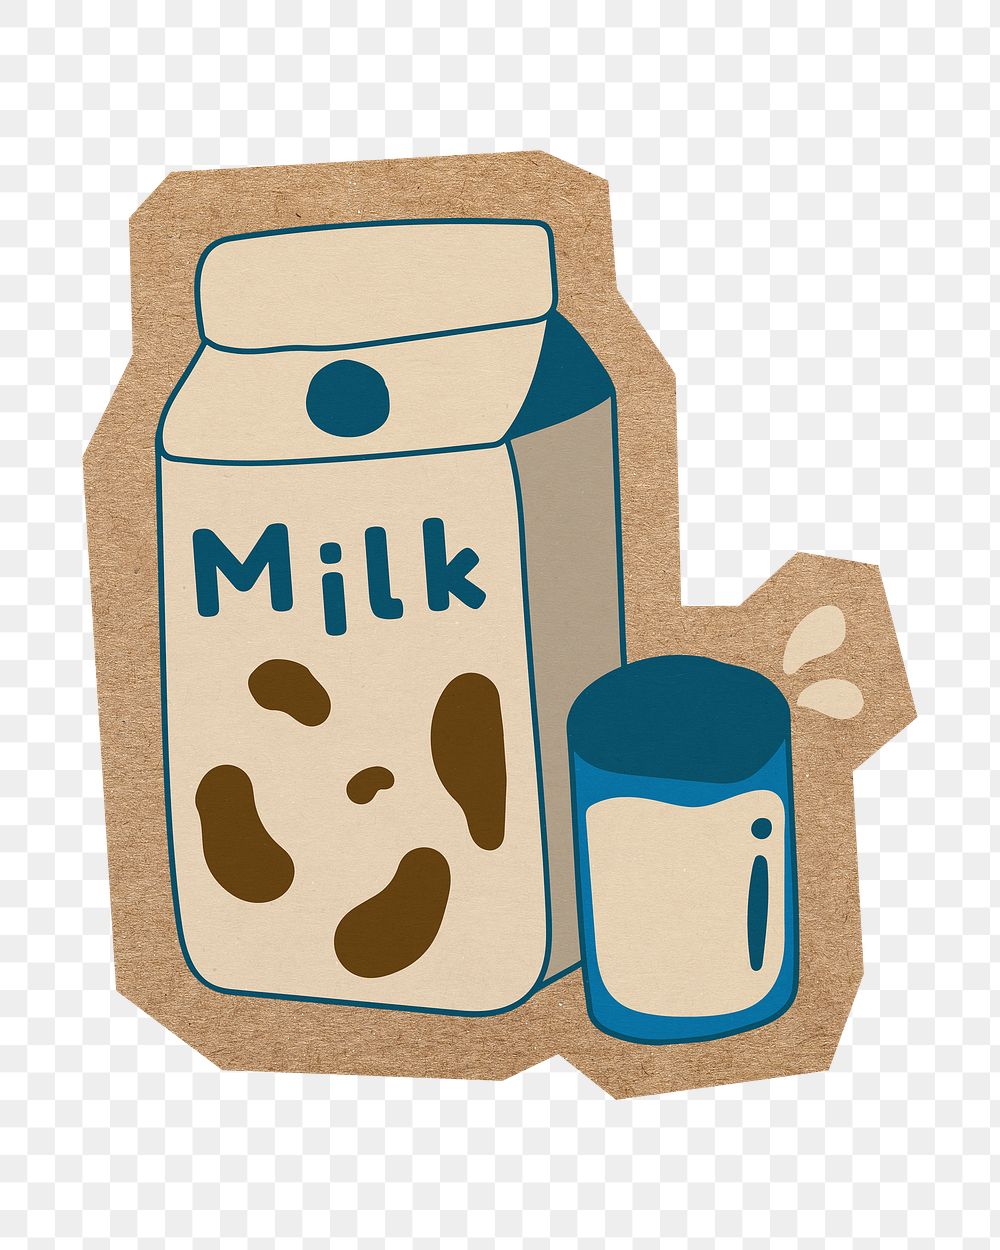 Cute milk carton png, cut out paper element, transparent background